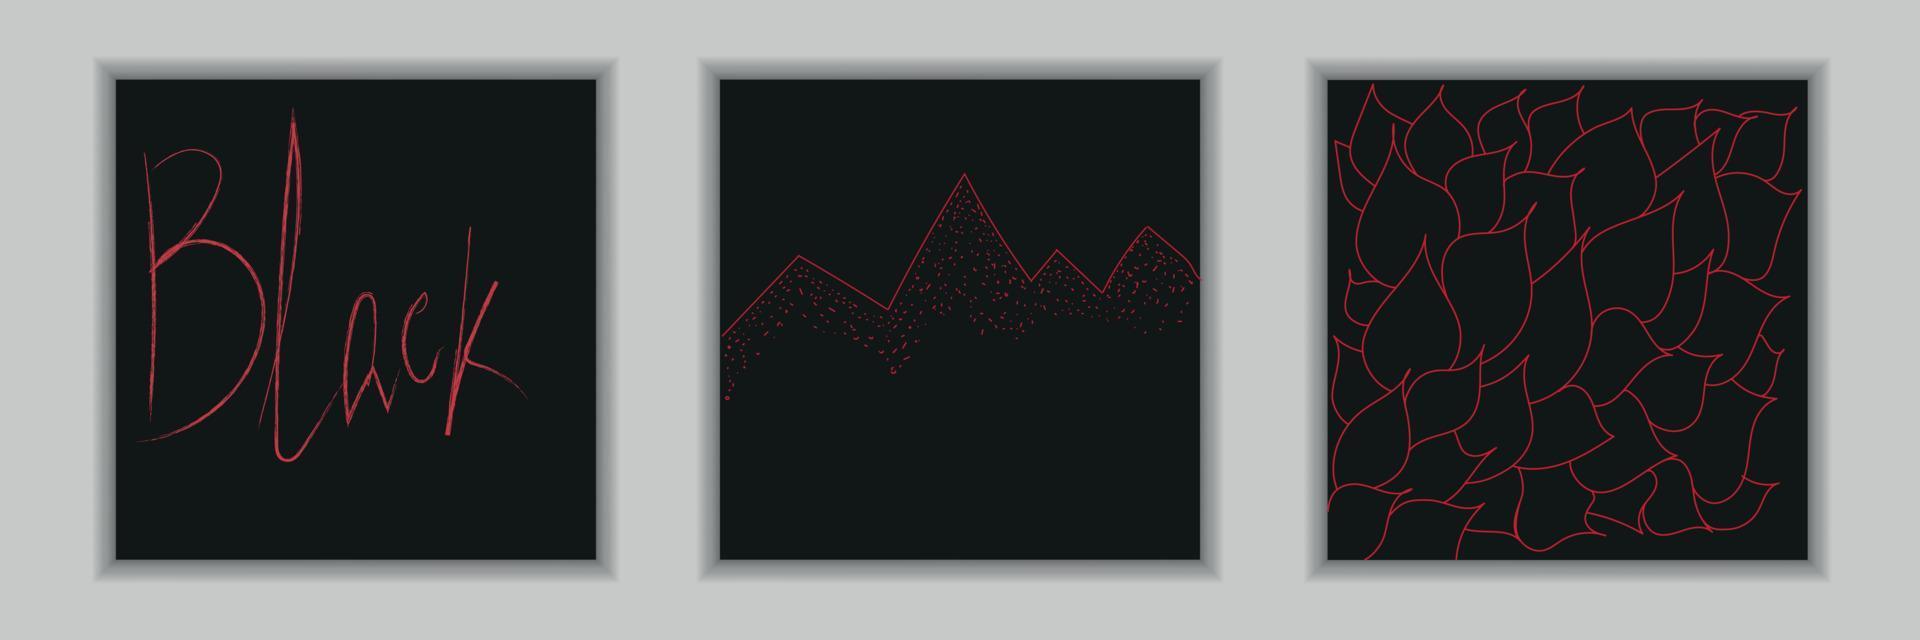 Sammlung abstrakter schwarzer und roter Hintergründe vektor